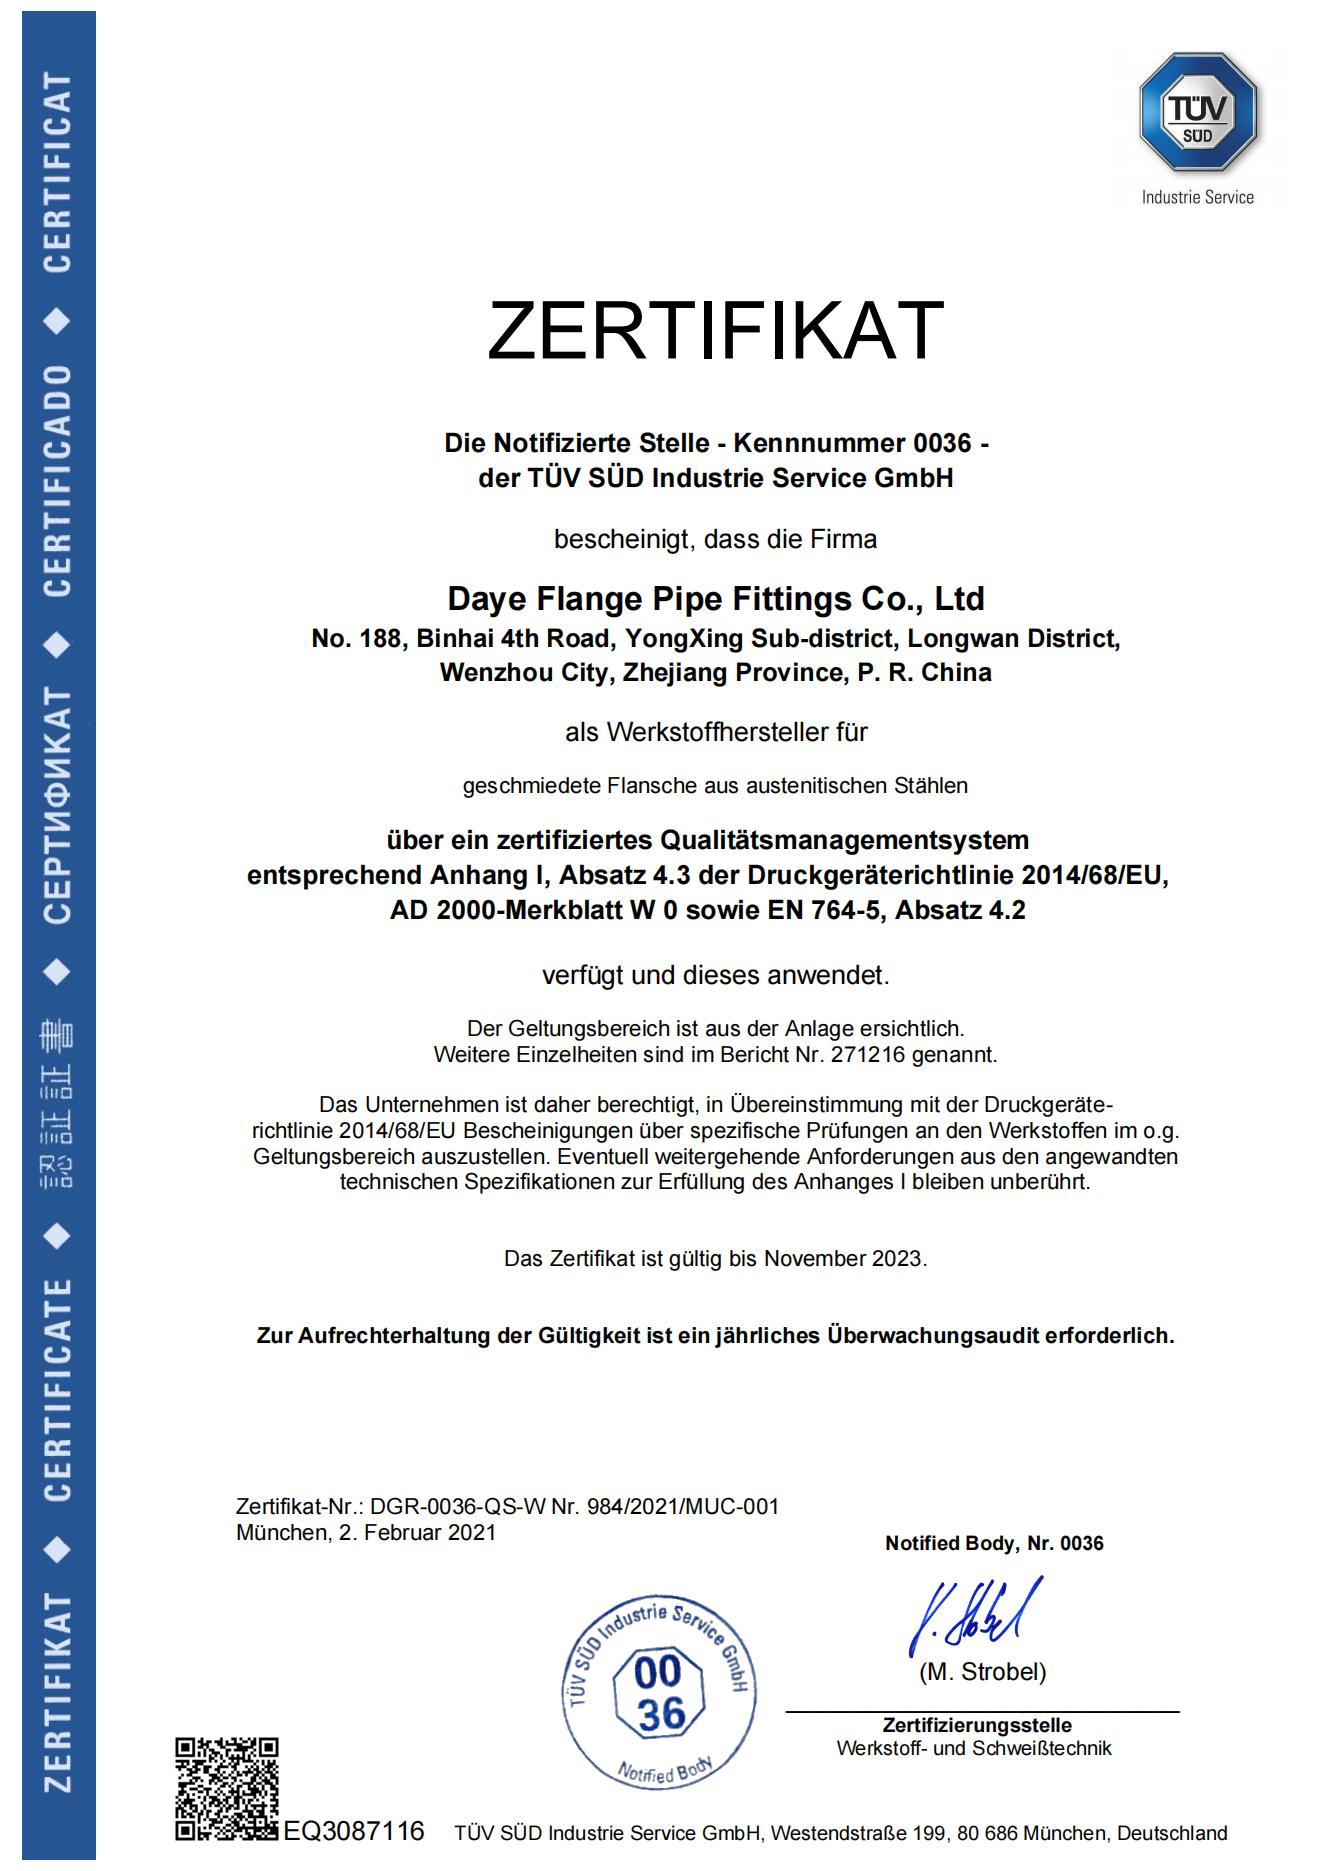 Die Notifizierte Stelle - Kennnummer 0036 - der TÜV SÜD Industrie Service GmbH(图1)